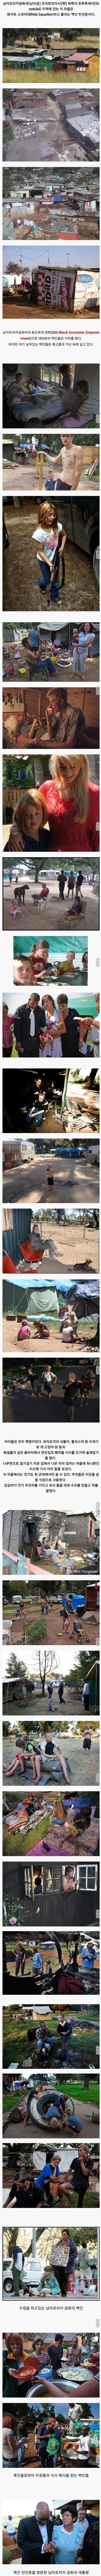 남아공의 백인 빈민촌